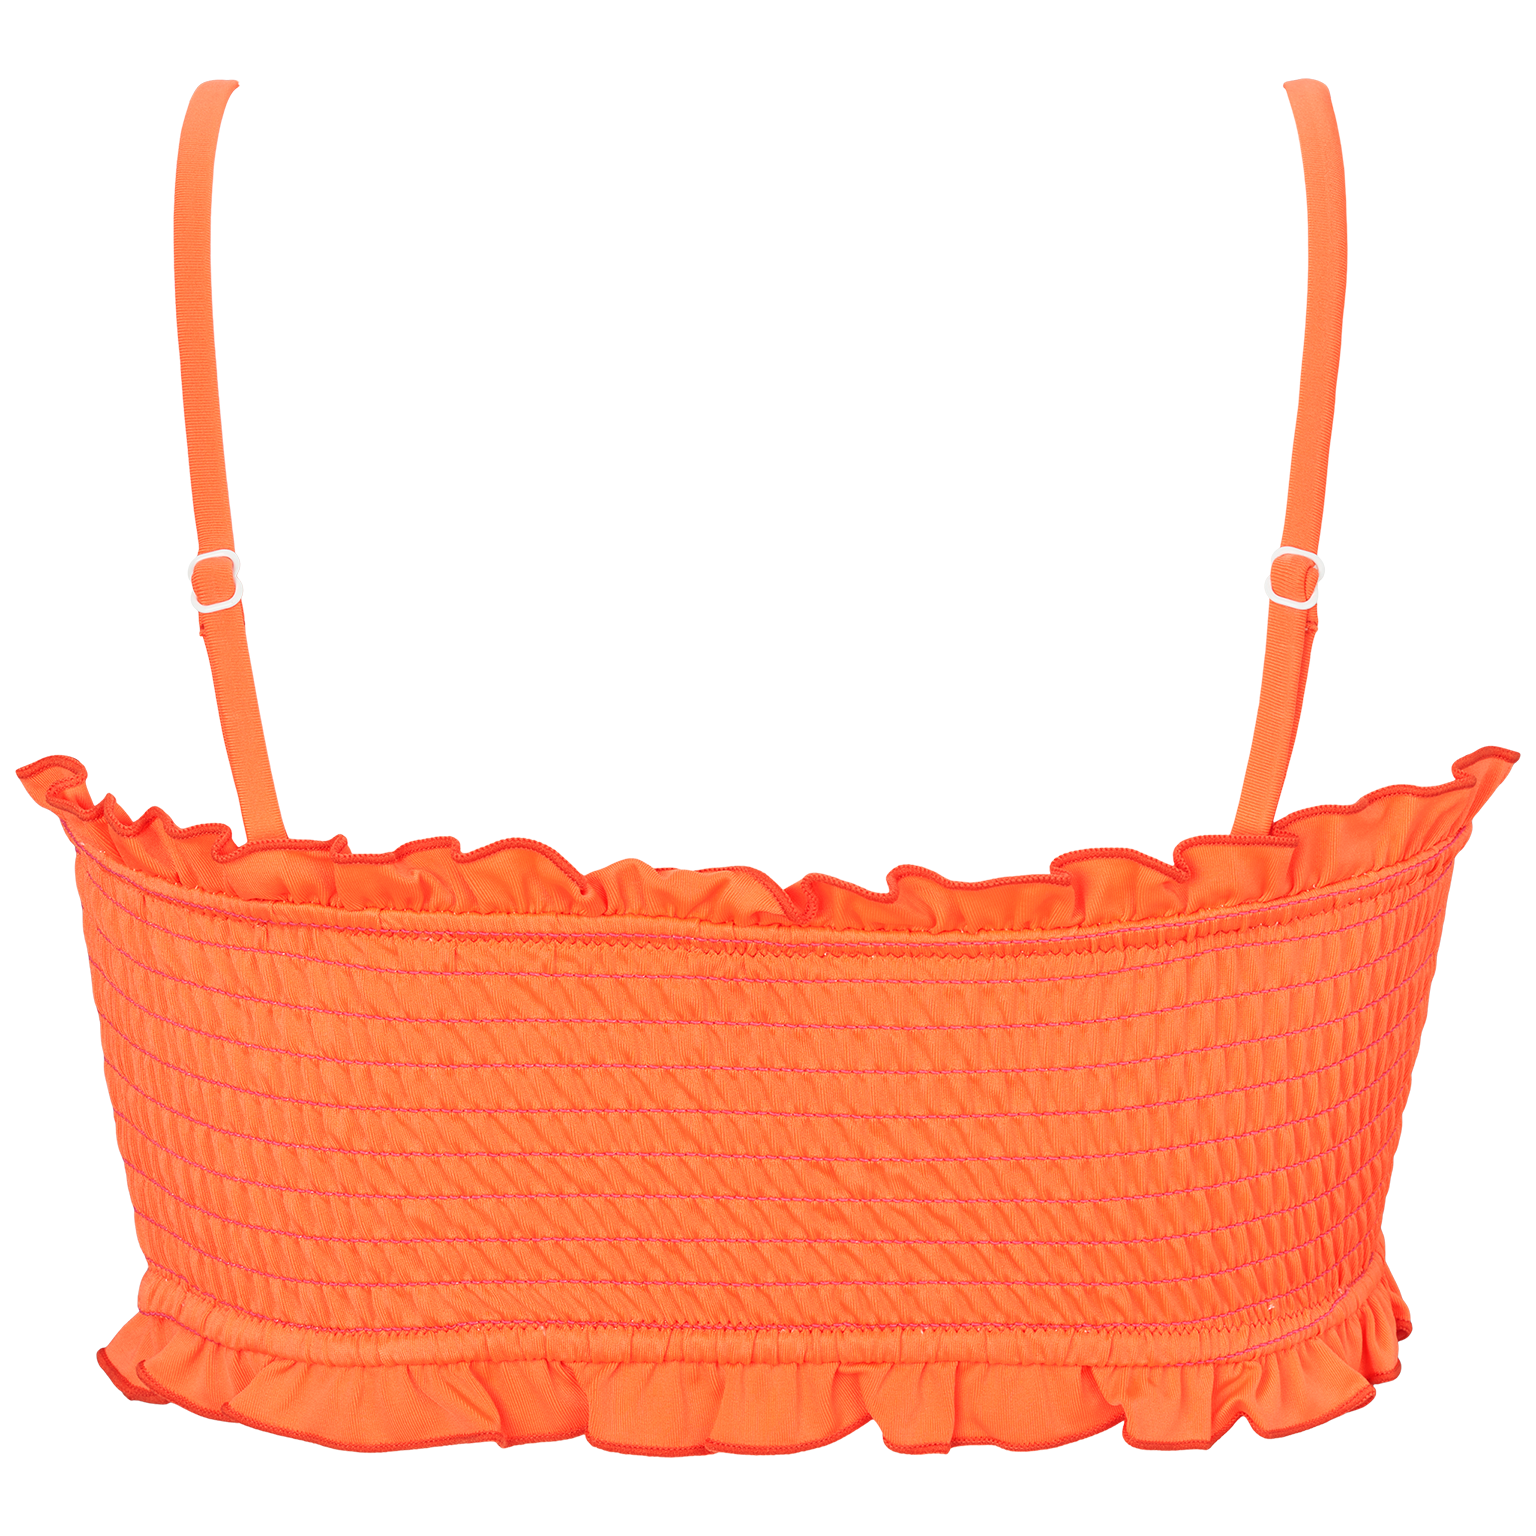 Orange bikini top